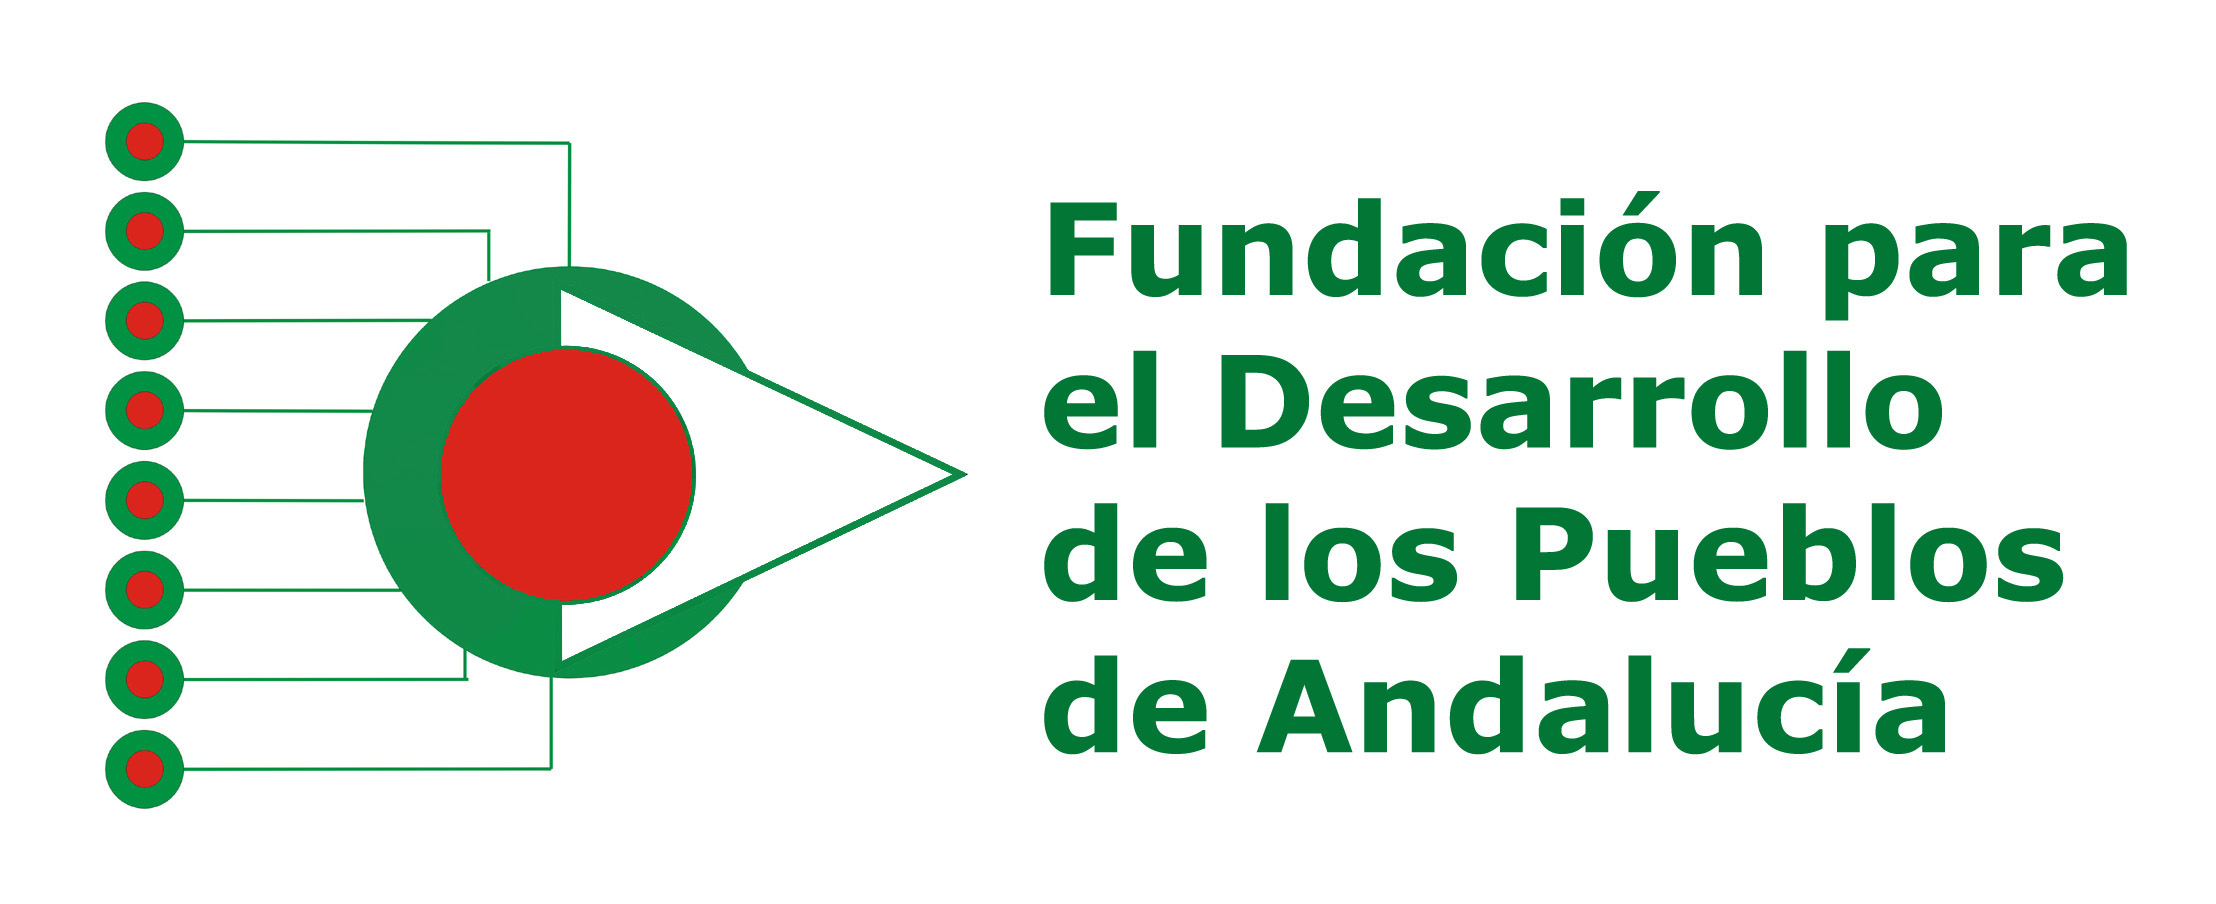 Fundación Para el Desarrollo de los Pueblos de Andalucía